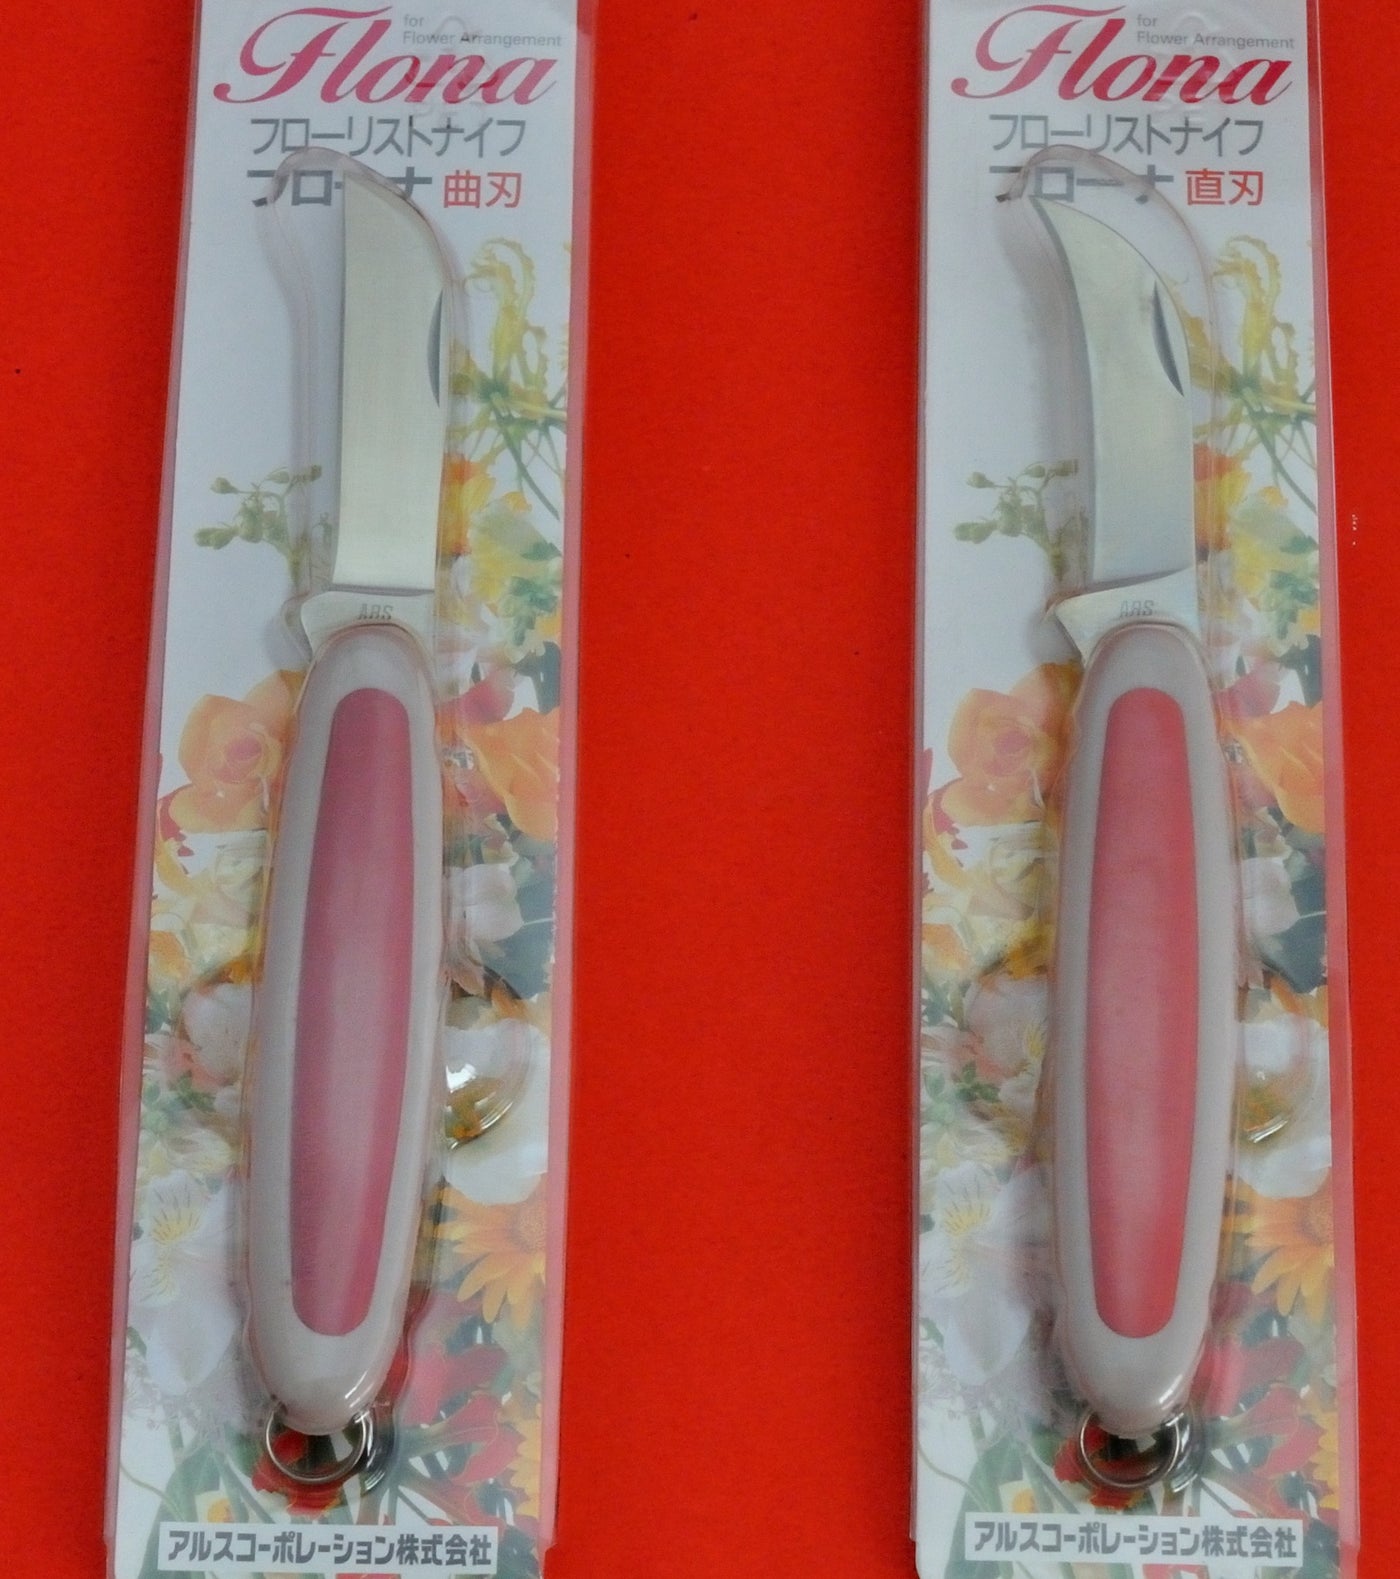 Floral Knife - Curved Folding Blade